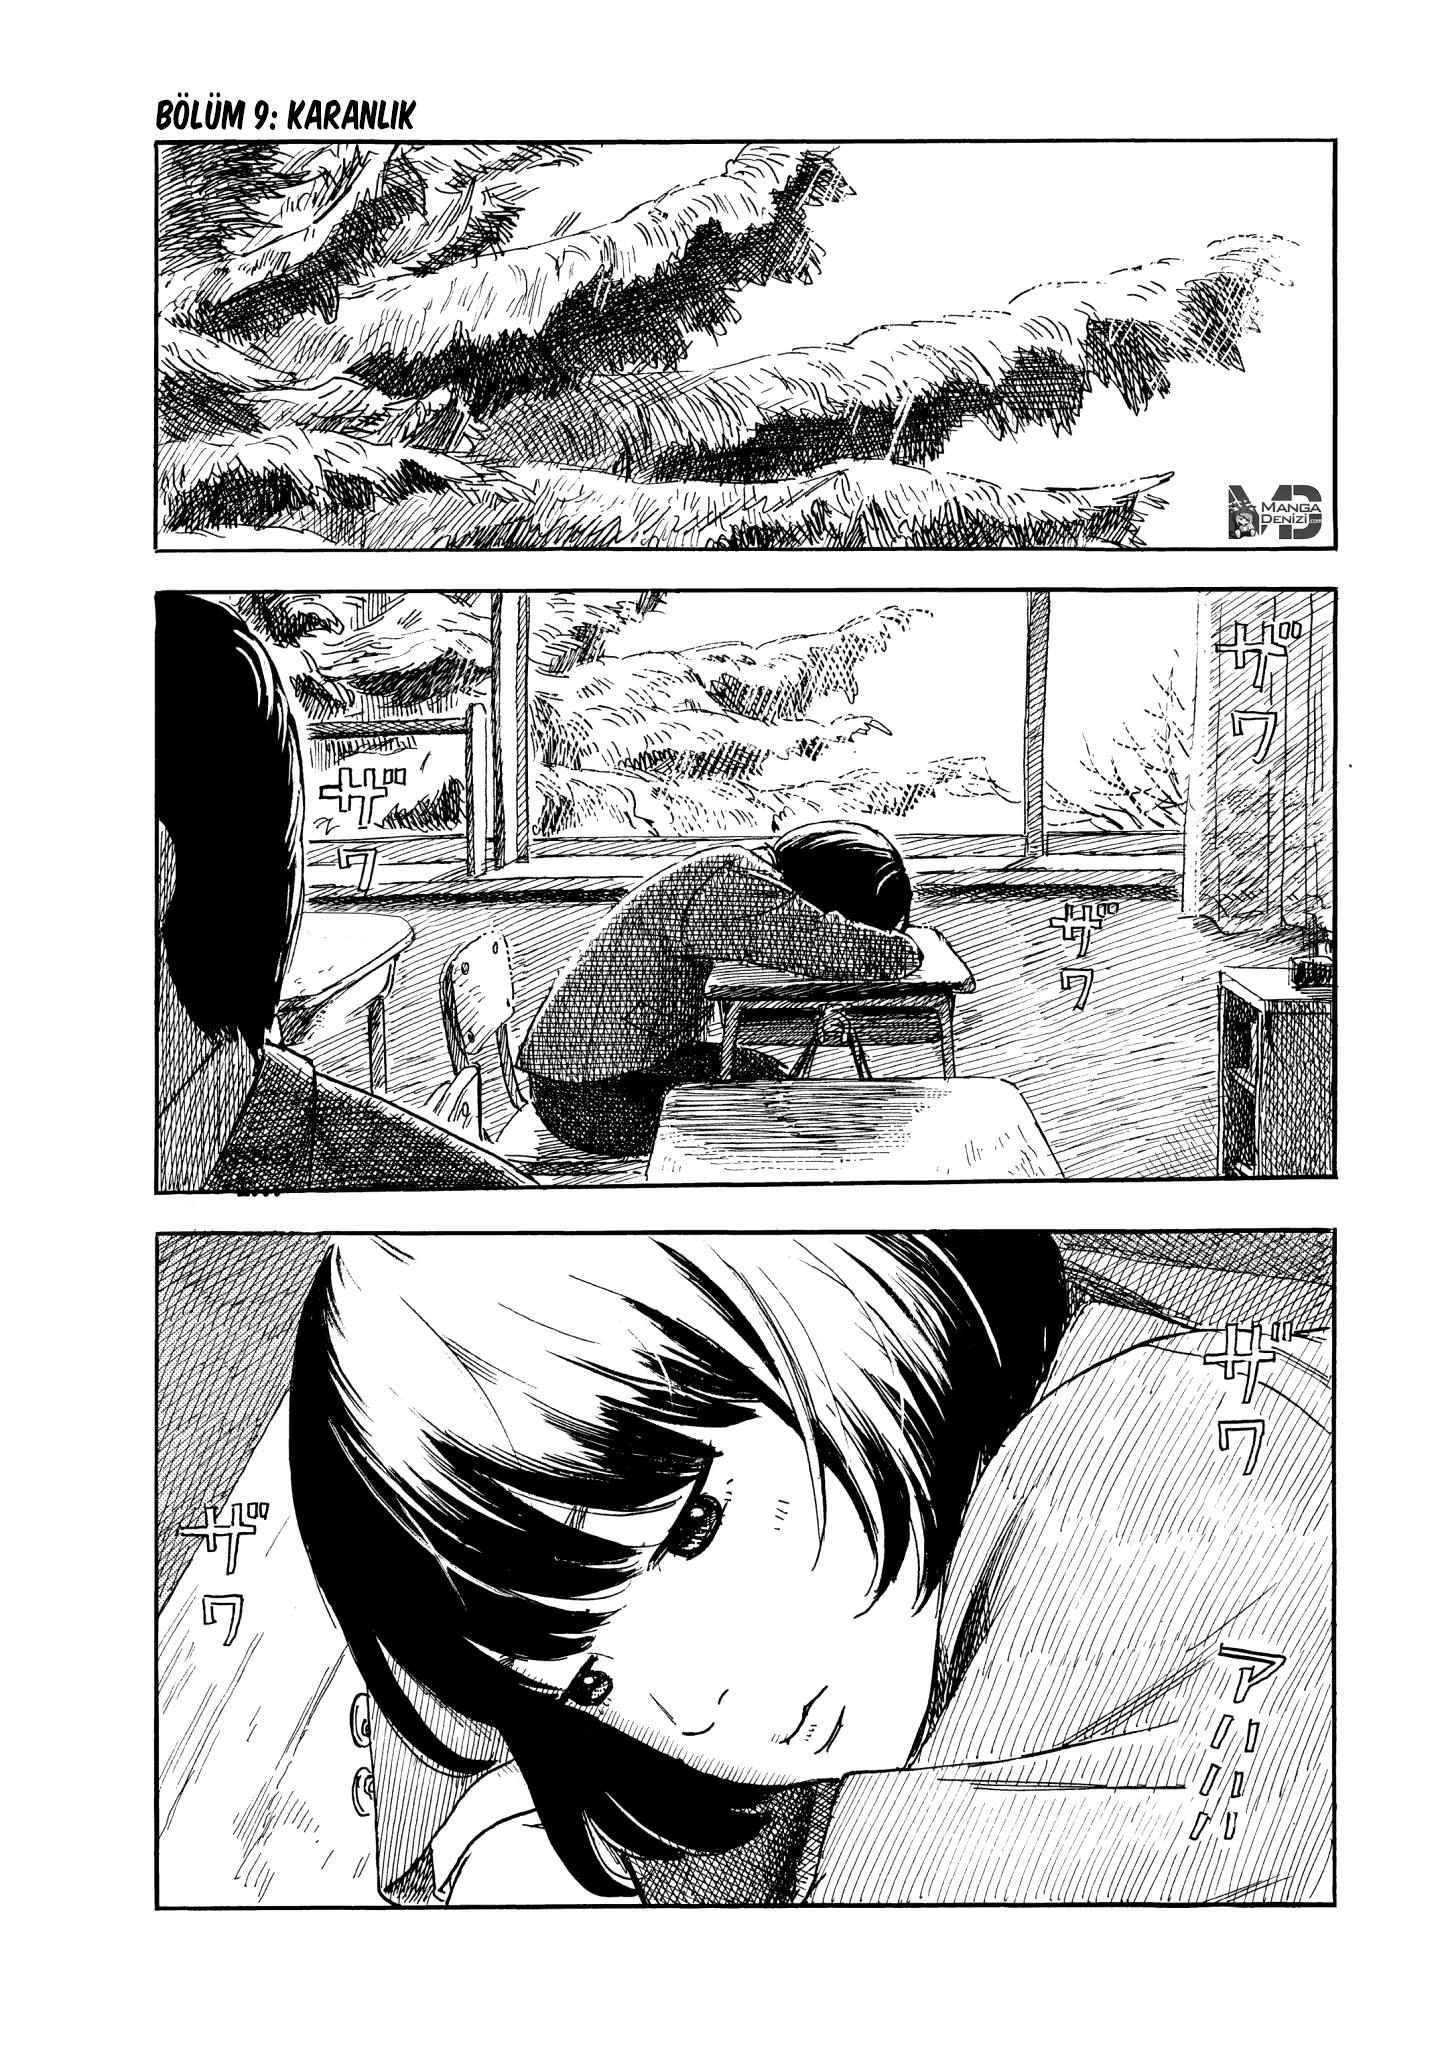 Happiness mangasının 09 bölümünün 2. sayfasını okuyorsunuz.